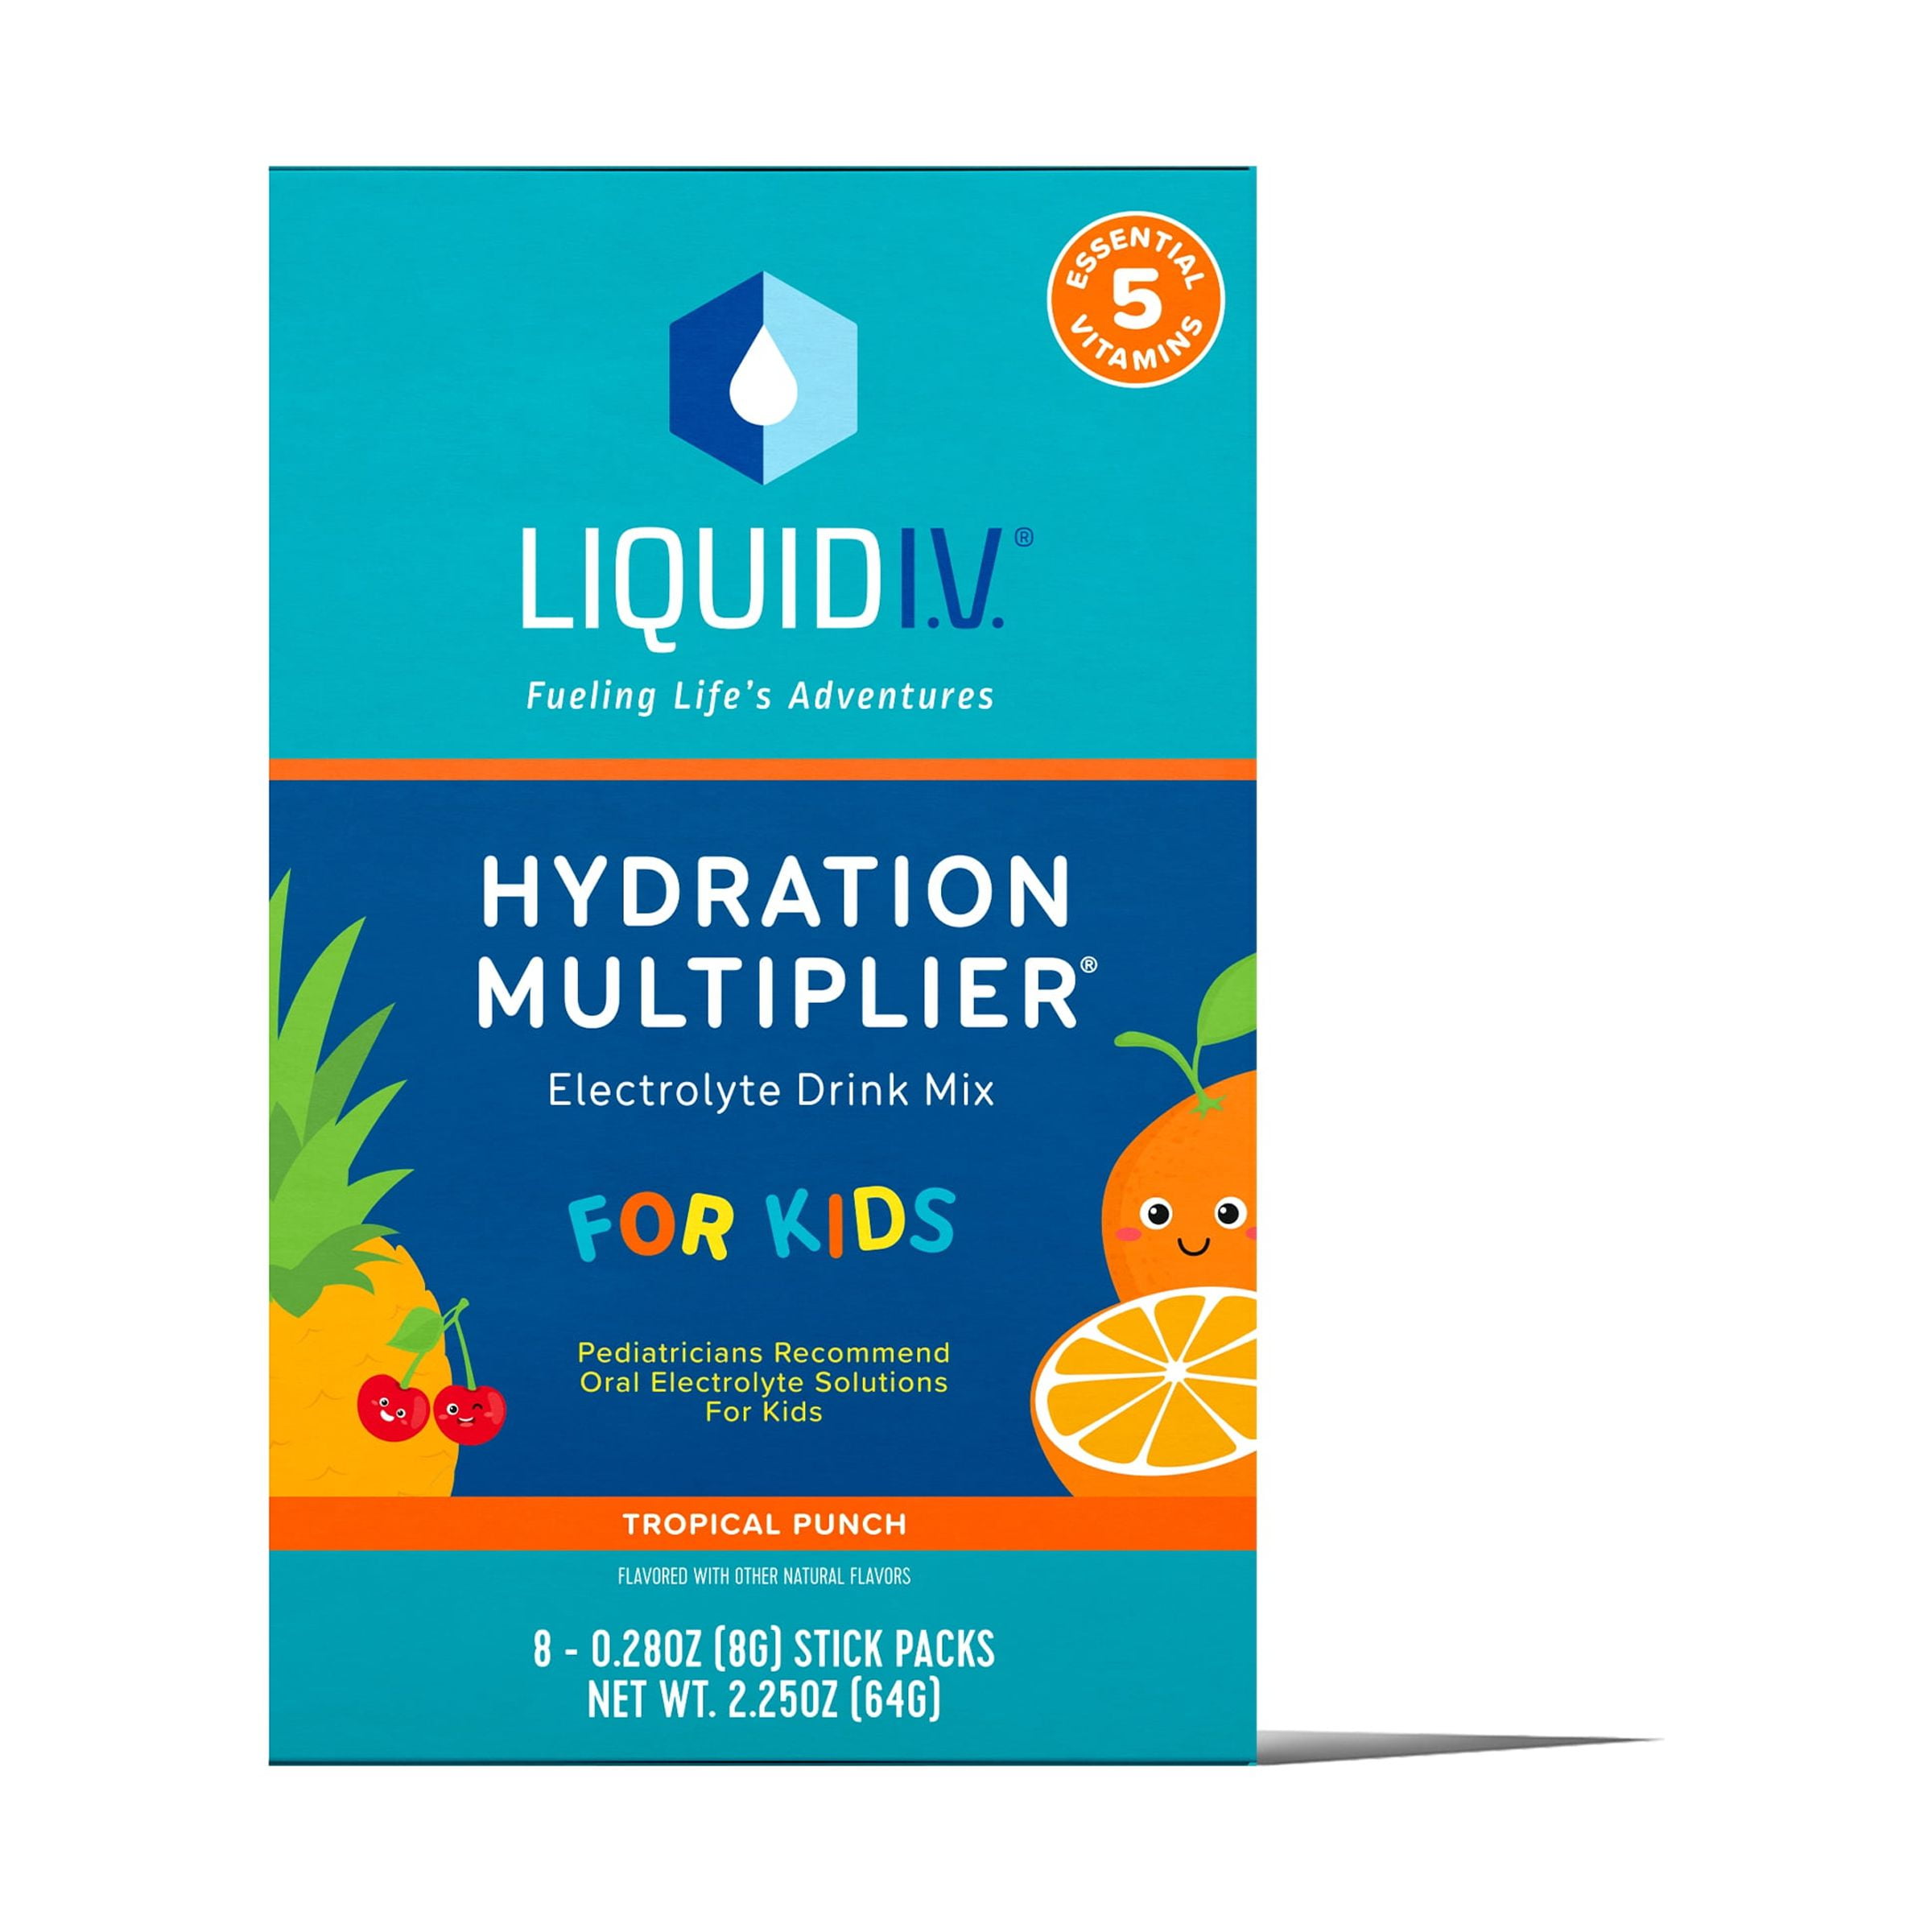 Liquid I.v. Hydration Multiplier Kids' Electrolyte Drink